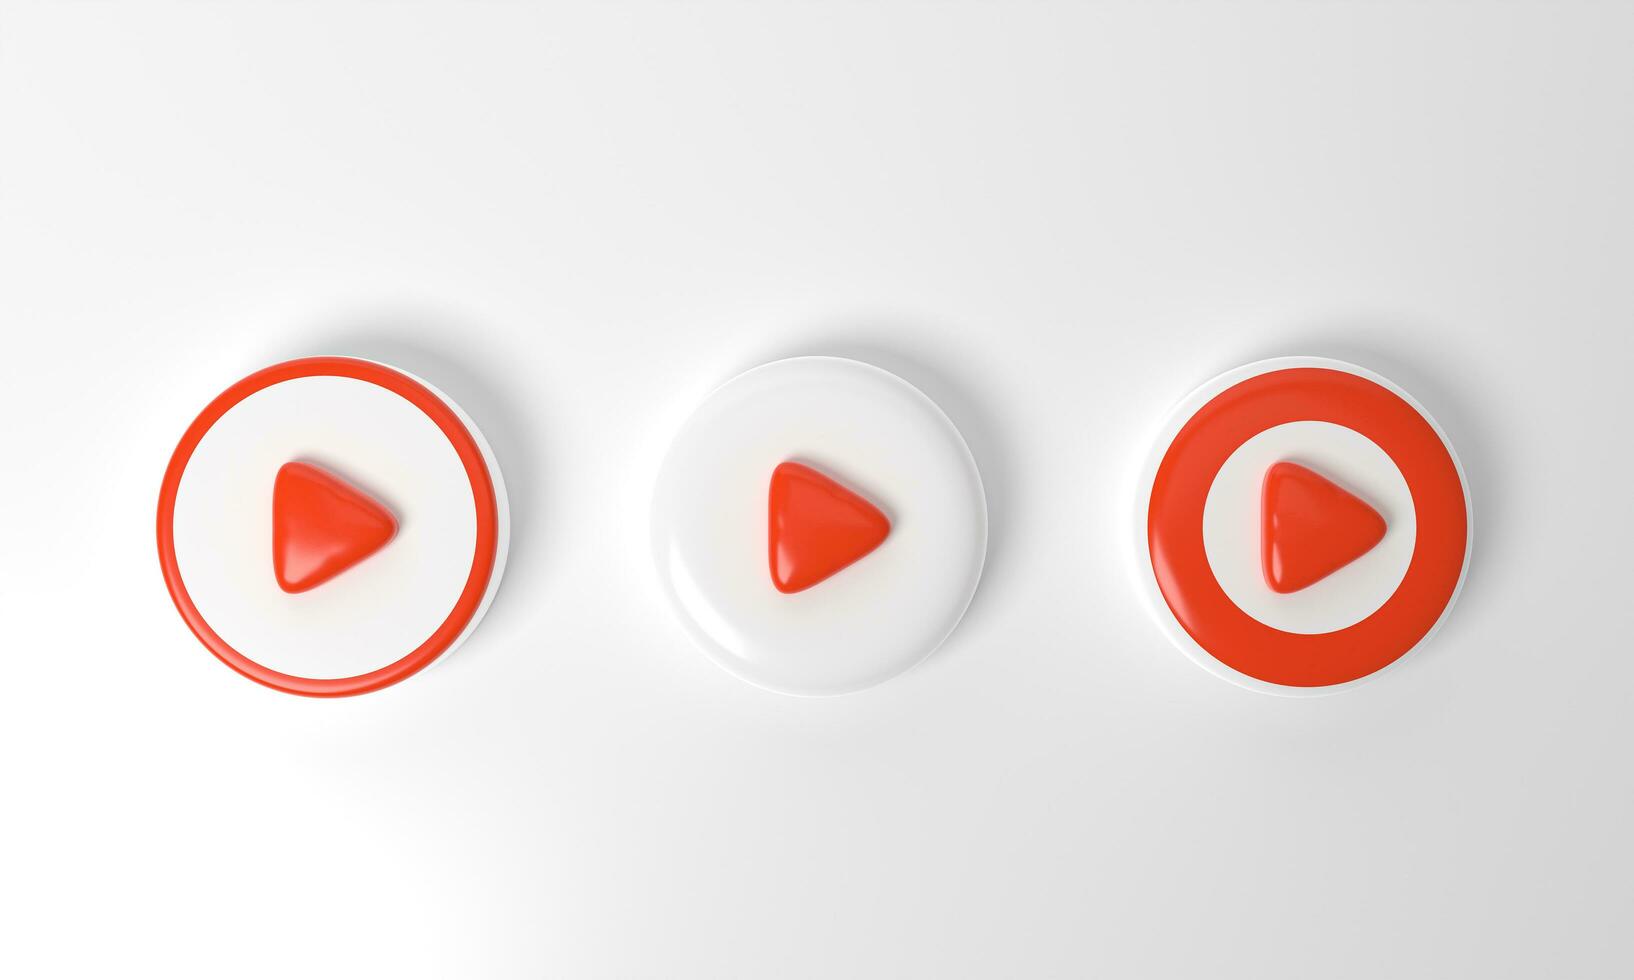 röd cirkel samling färgad runda spela knapp på pastell bakgrund. begrepp av video ikon logotyp för spela klämma, audio uppspelning. 3d tolkning. spela gränssnitt symbol. social media och hemsida inlägg foto